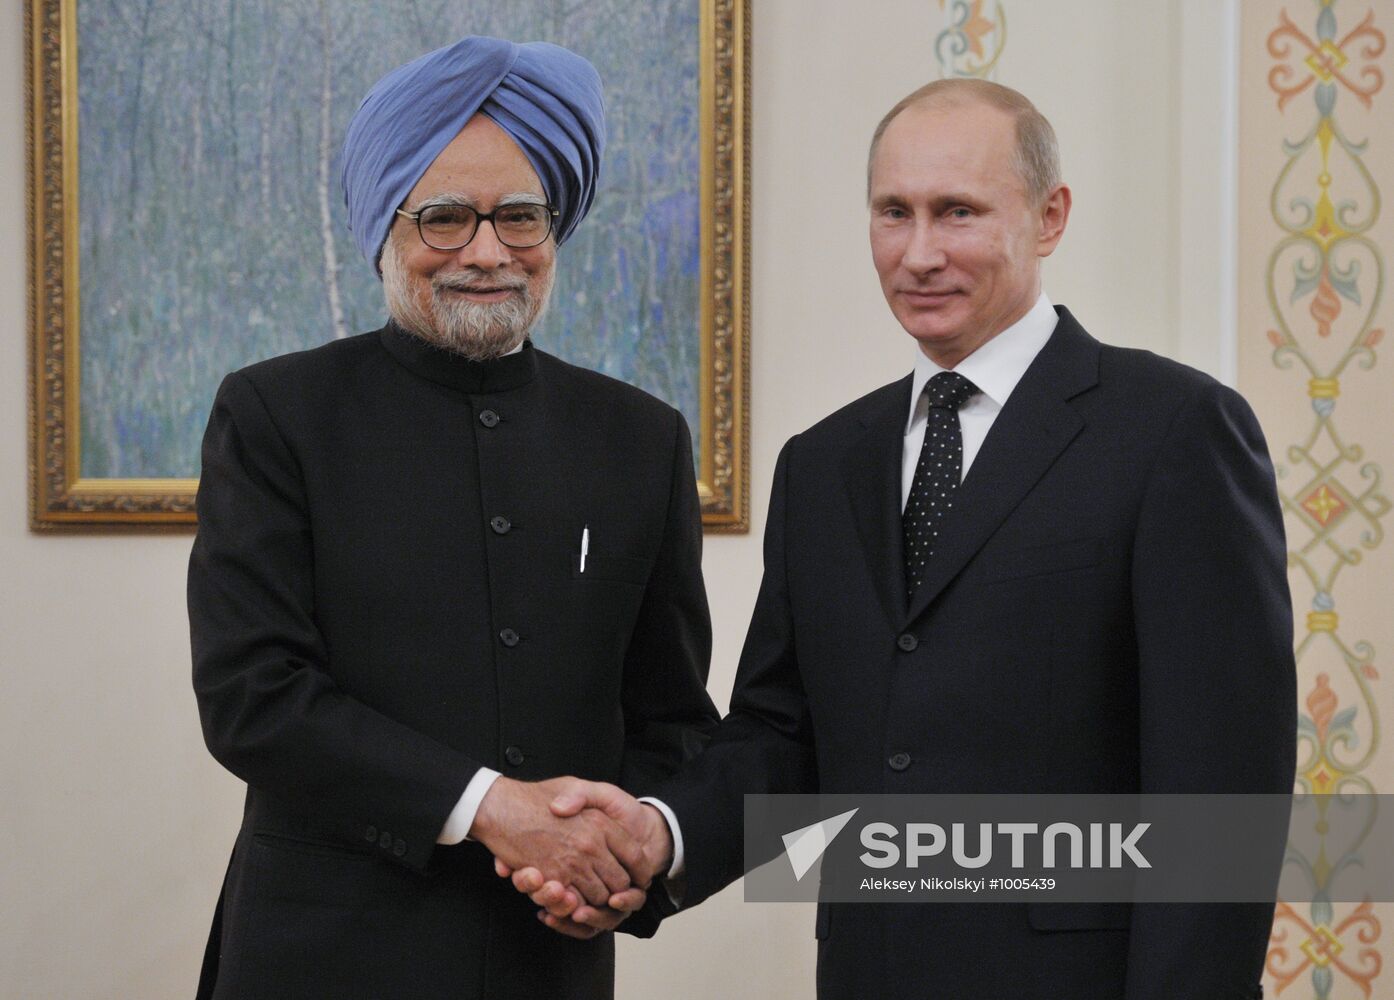 Vladimir Putin and Manmohan Singh meet in Novo-Ogaryovo